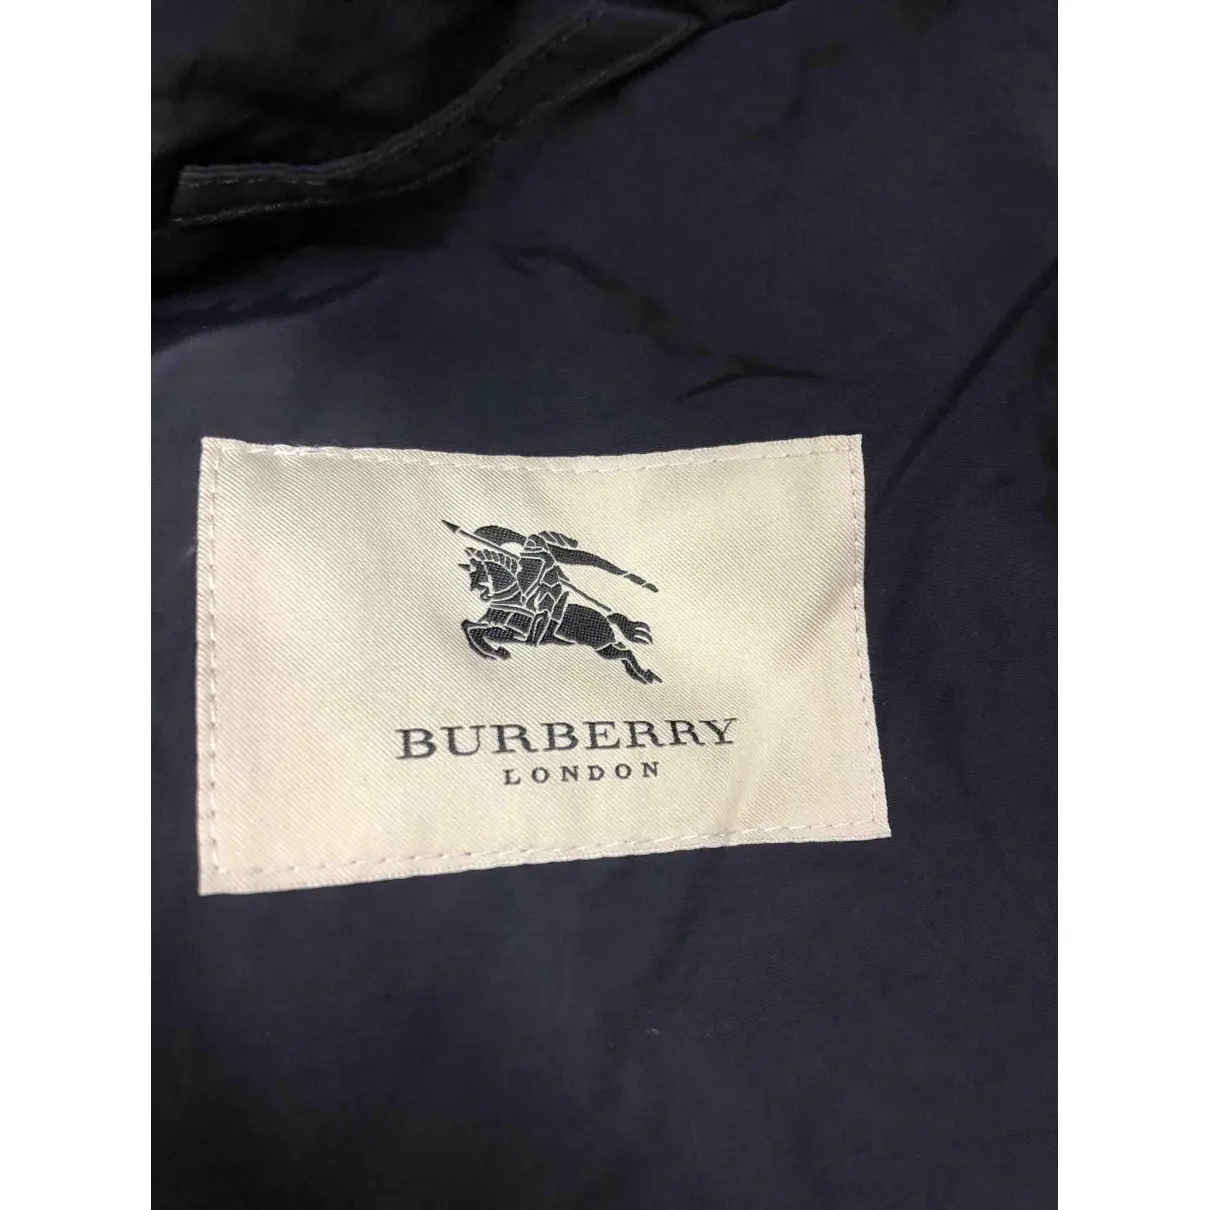 Buy Burberry Coat online